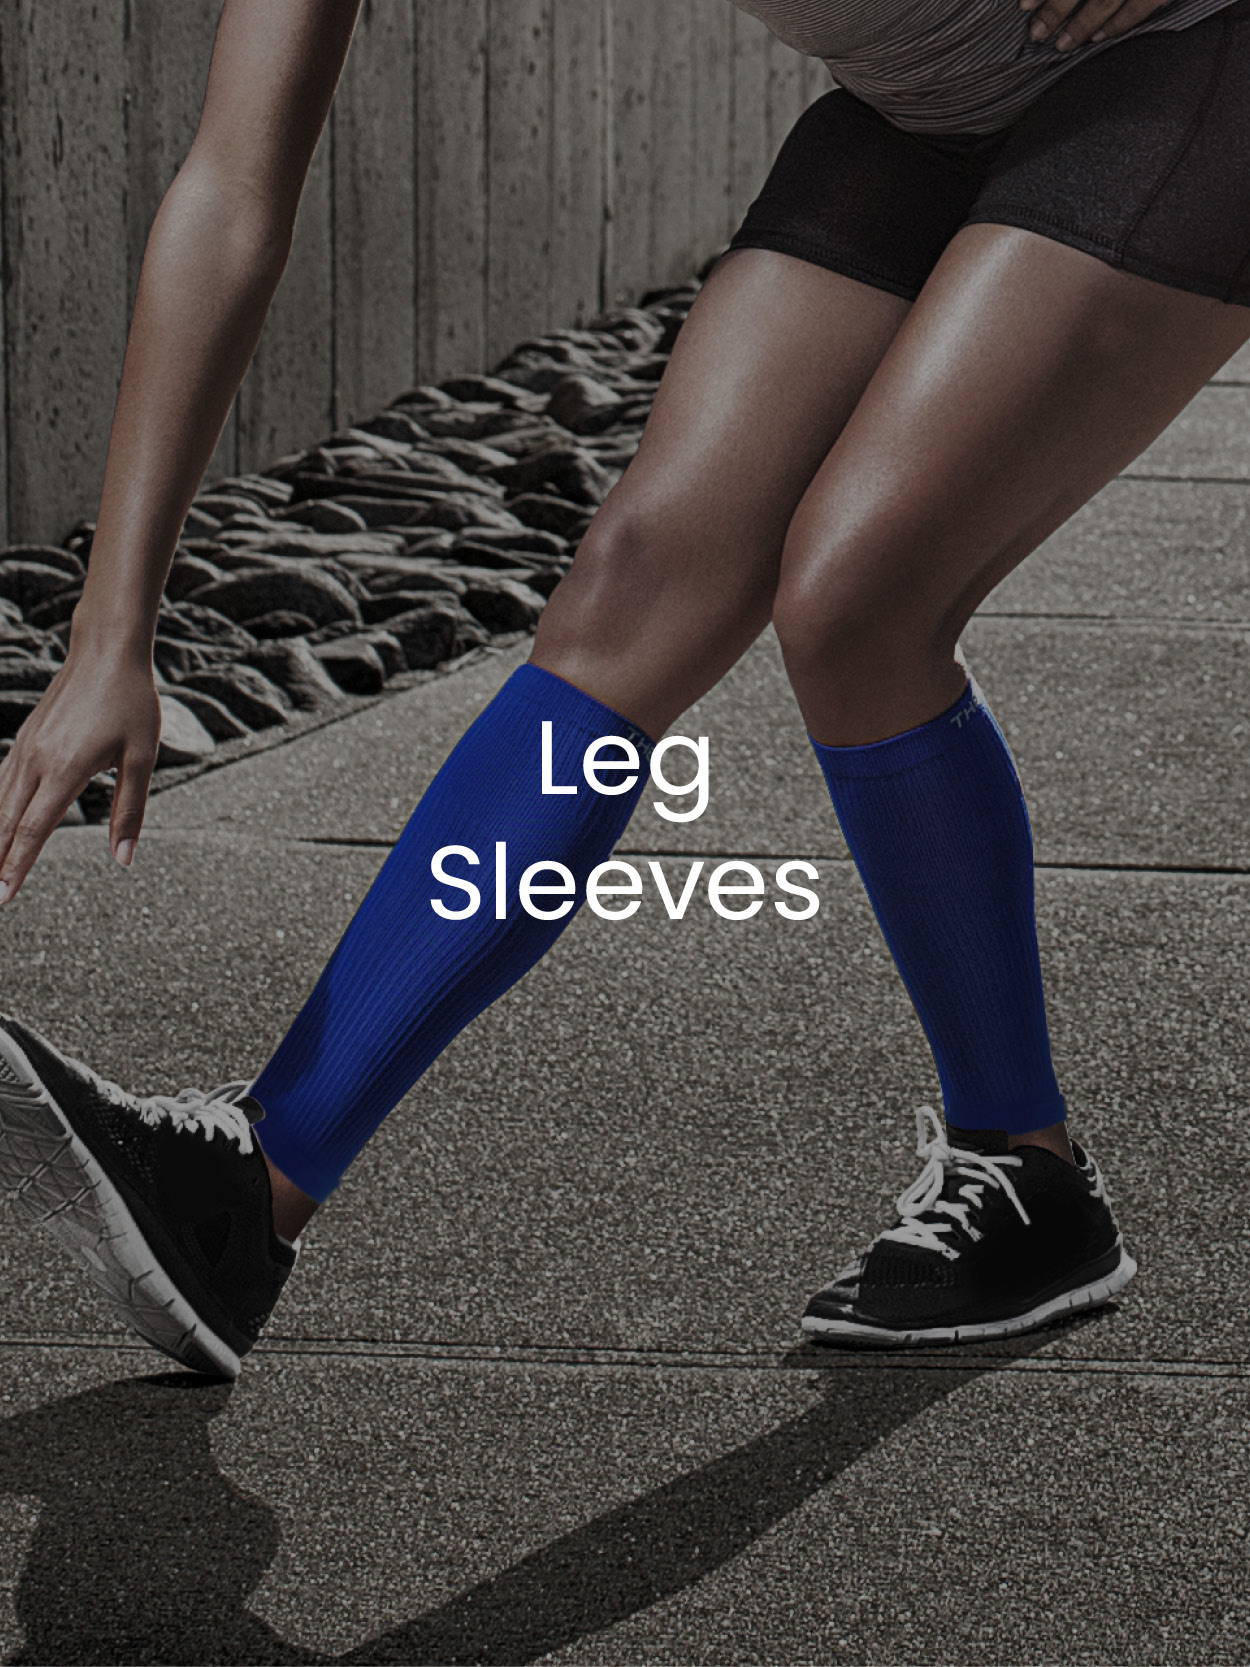 Leg Sleeves